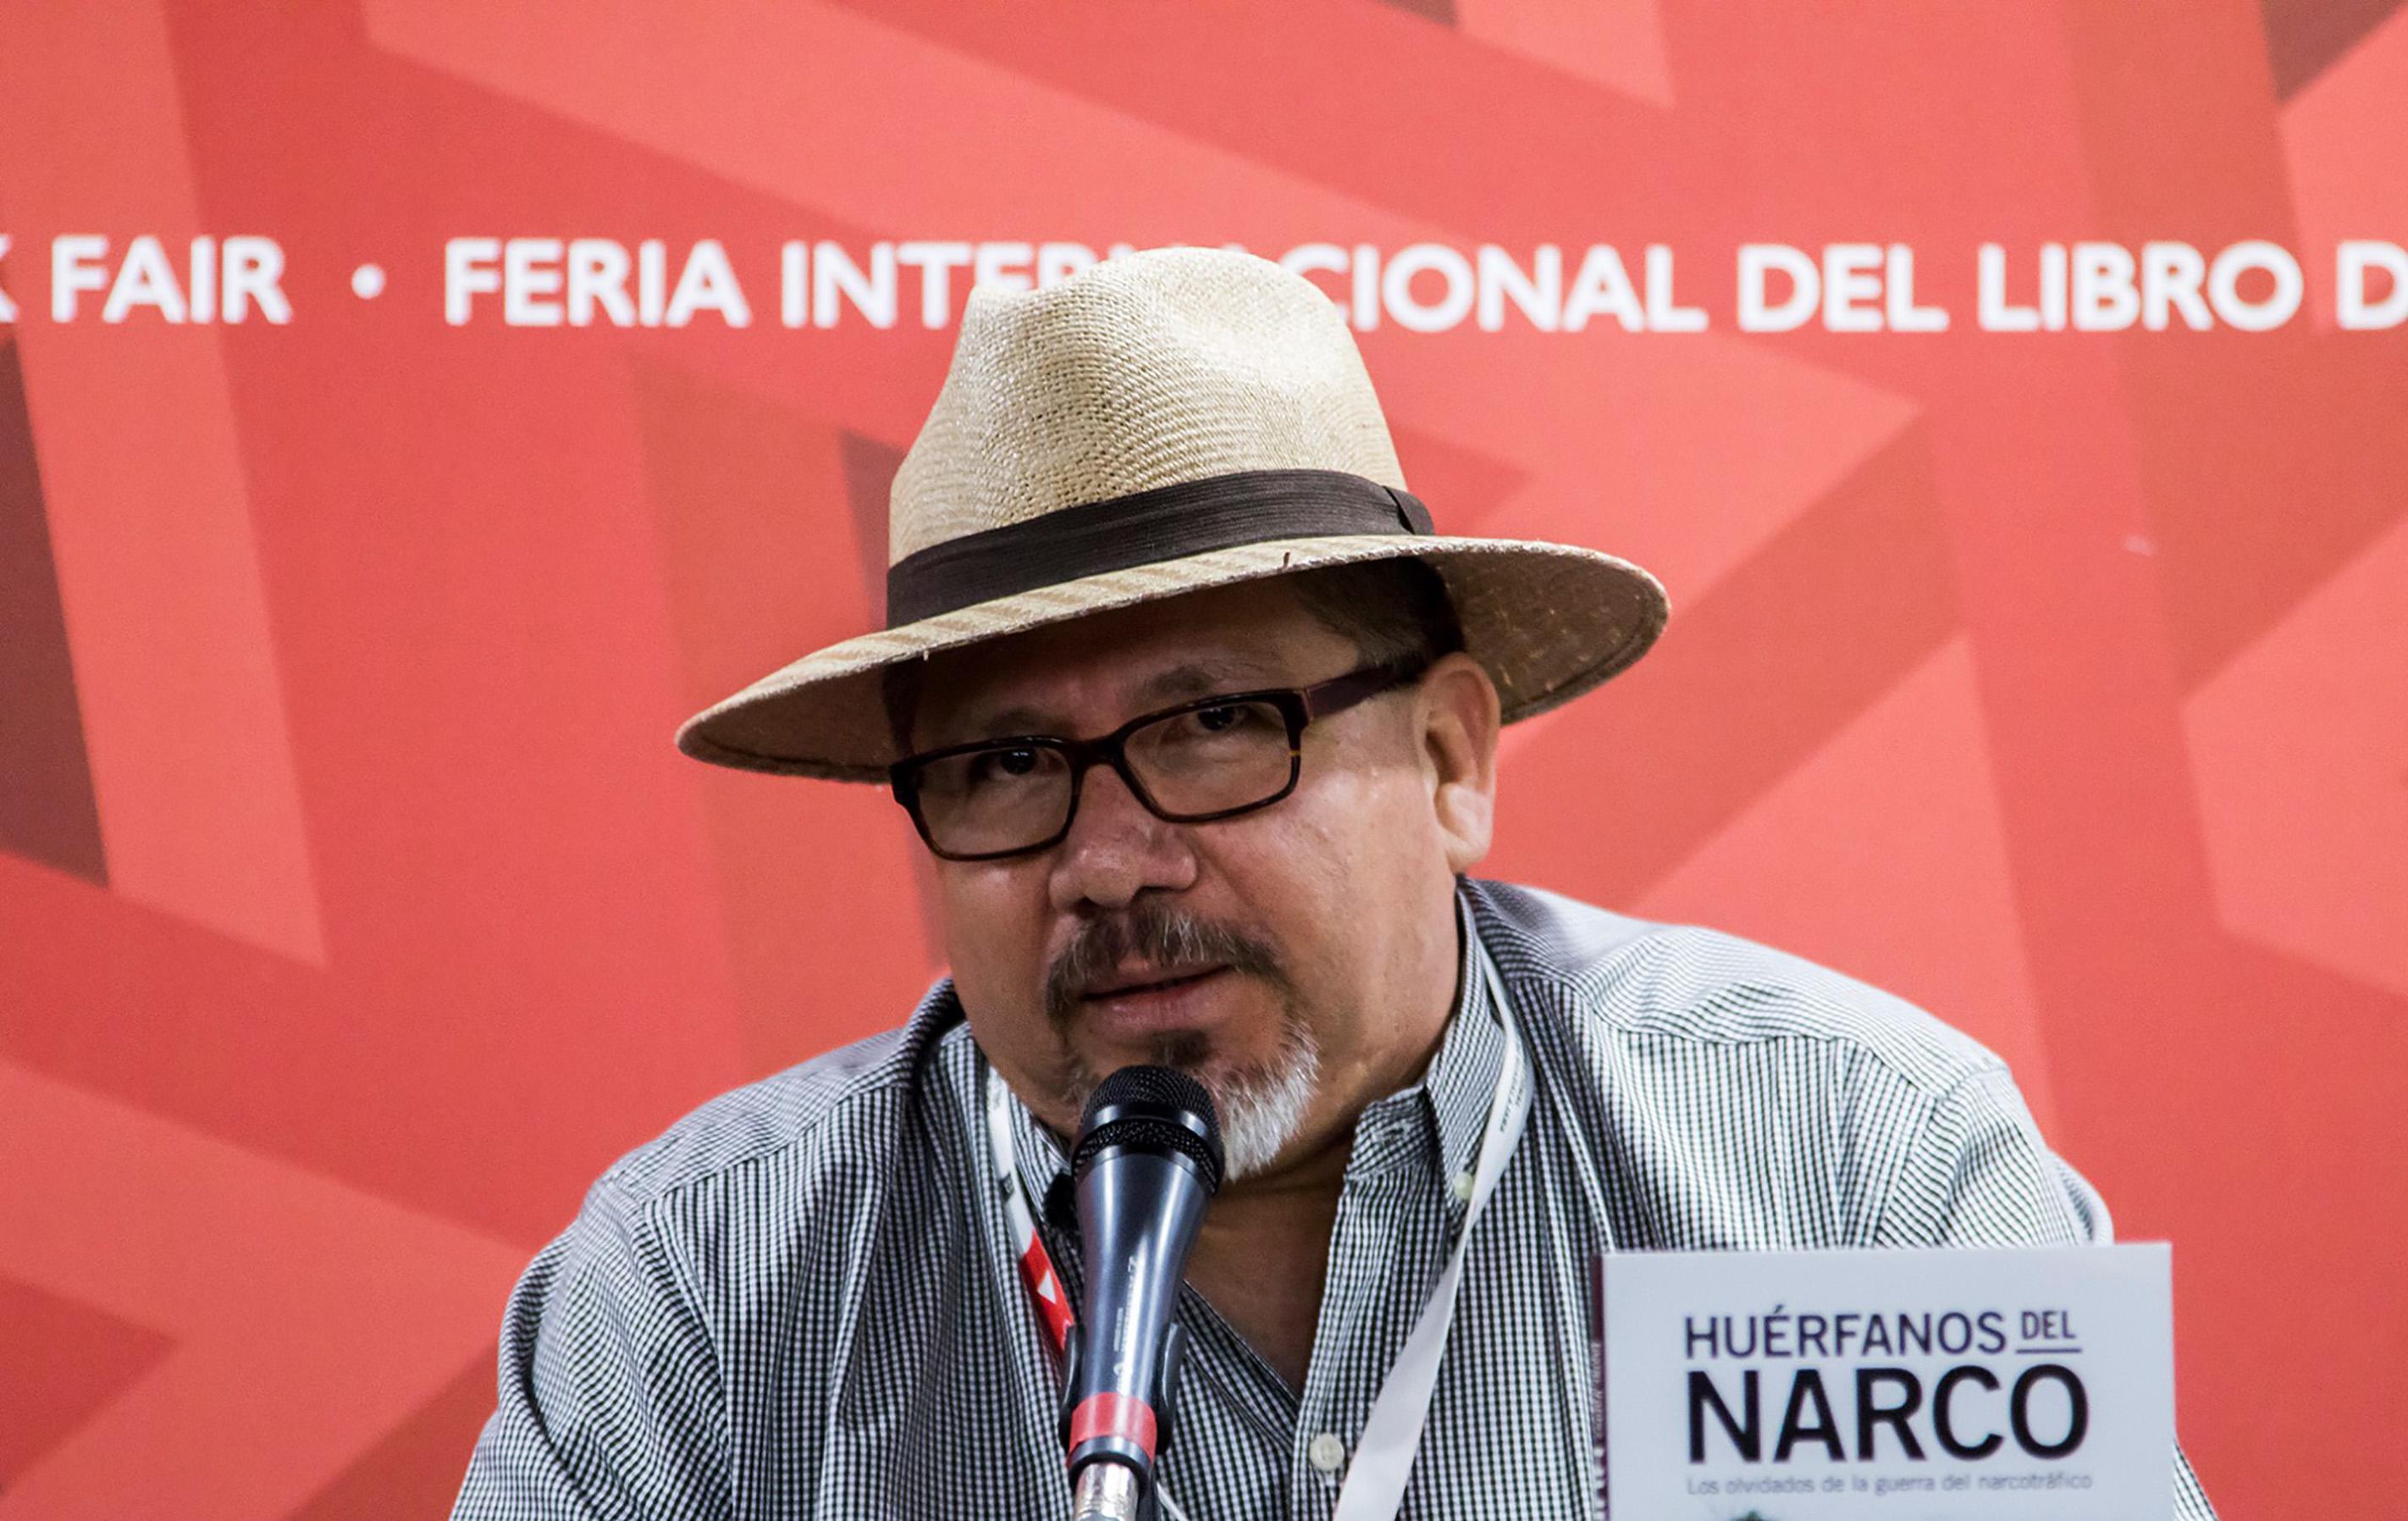 Javier Valdez en la presentación de su libro,  Los Huérfanos del Narco, en la Feria Internacional del Libro en Guadalajara, México el 27 de noviembre de 2016.  Foto: Hector Gerrero, AFP